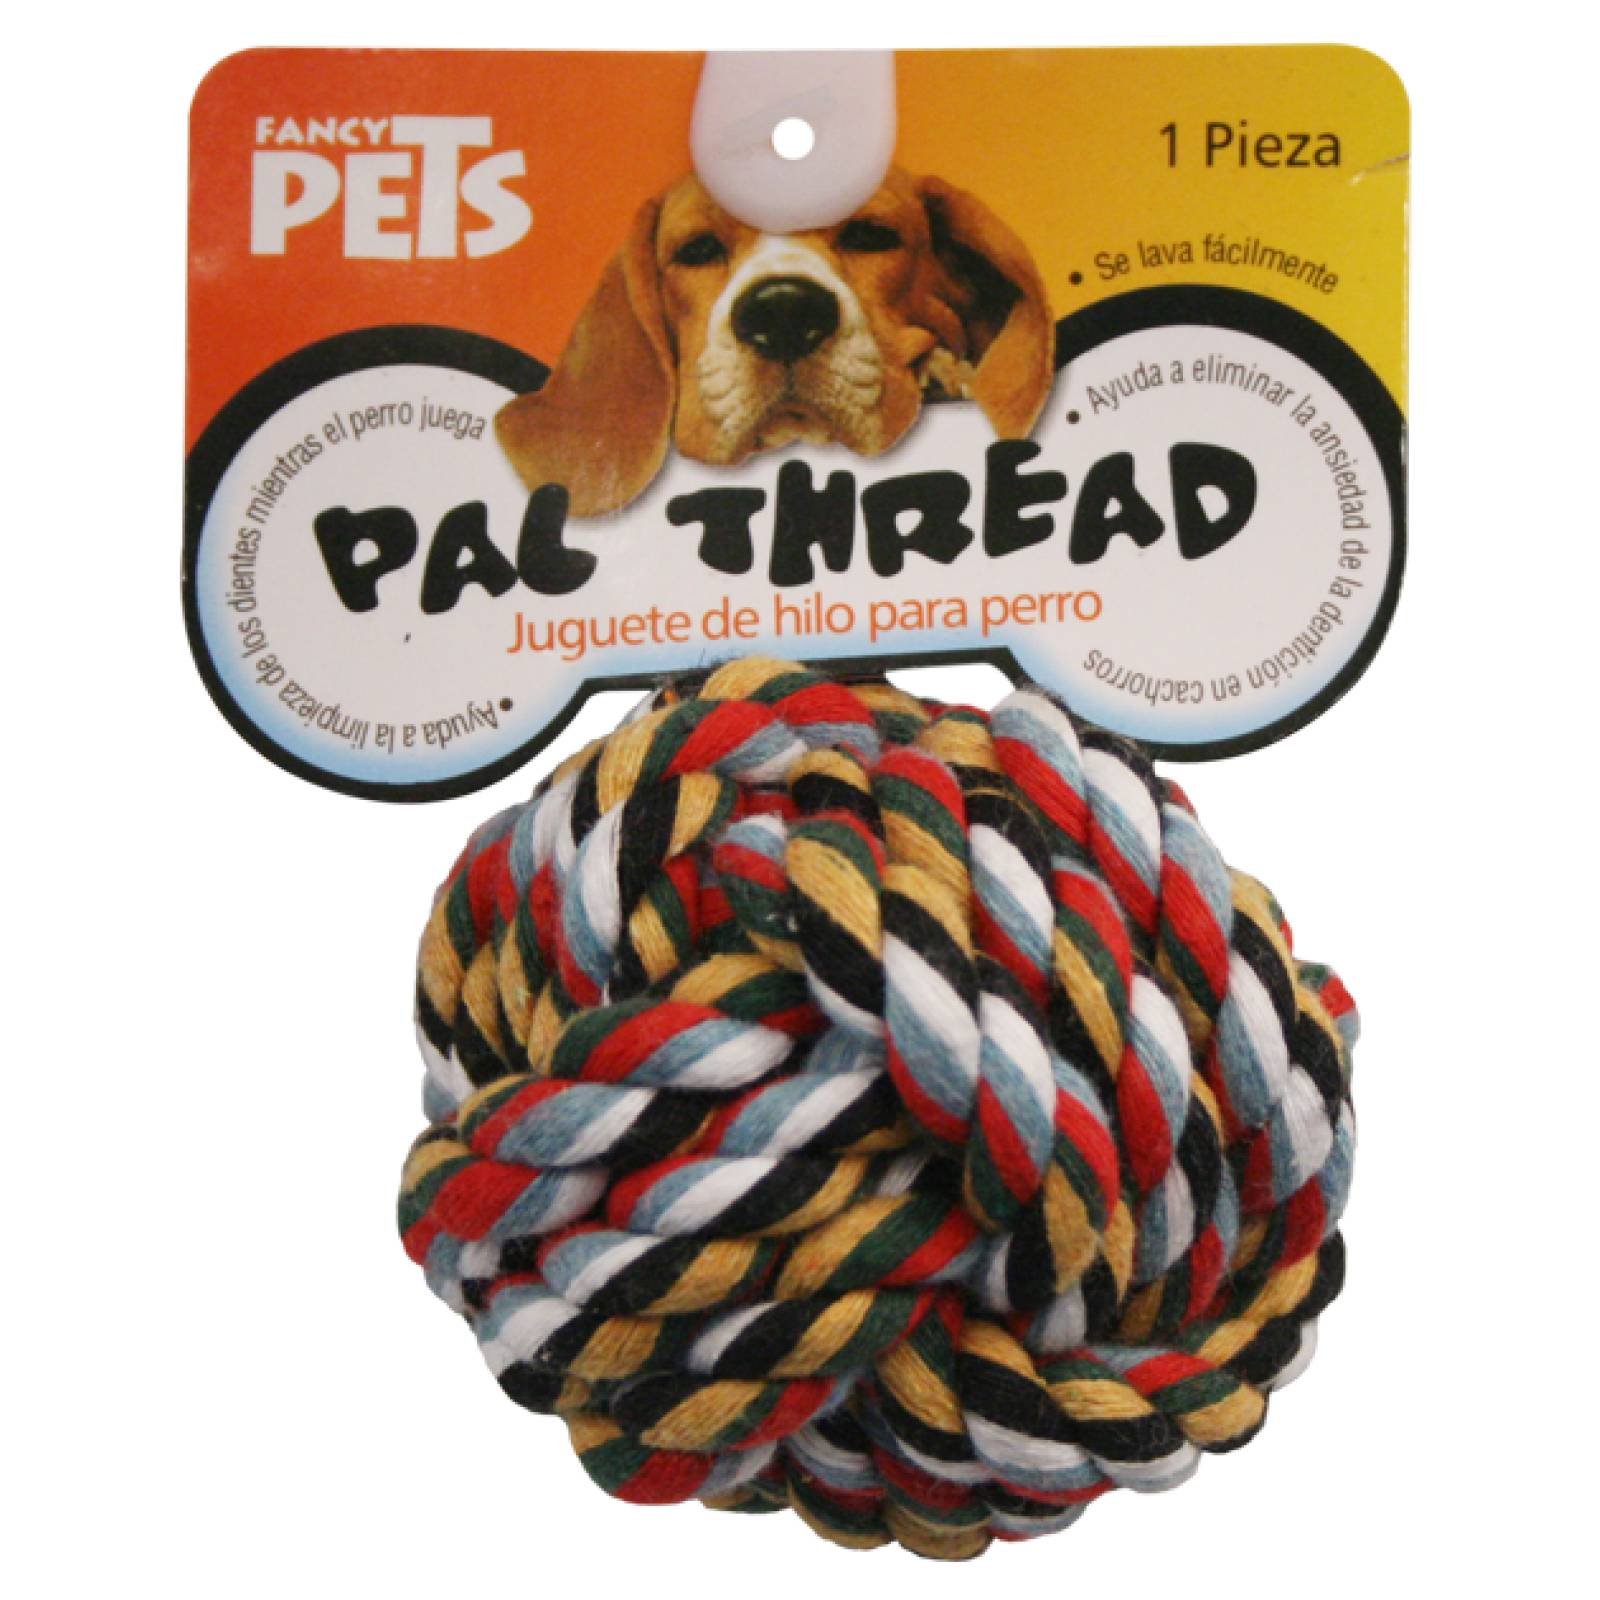 Fancy Pets Juguete para Perro Bola de Hilo de Colores Surtidos 5 cm